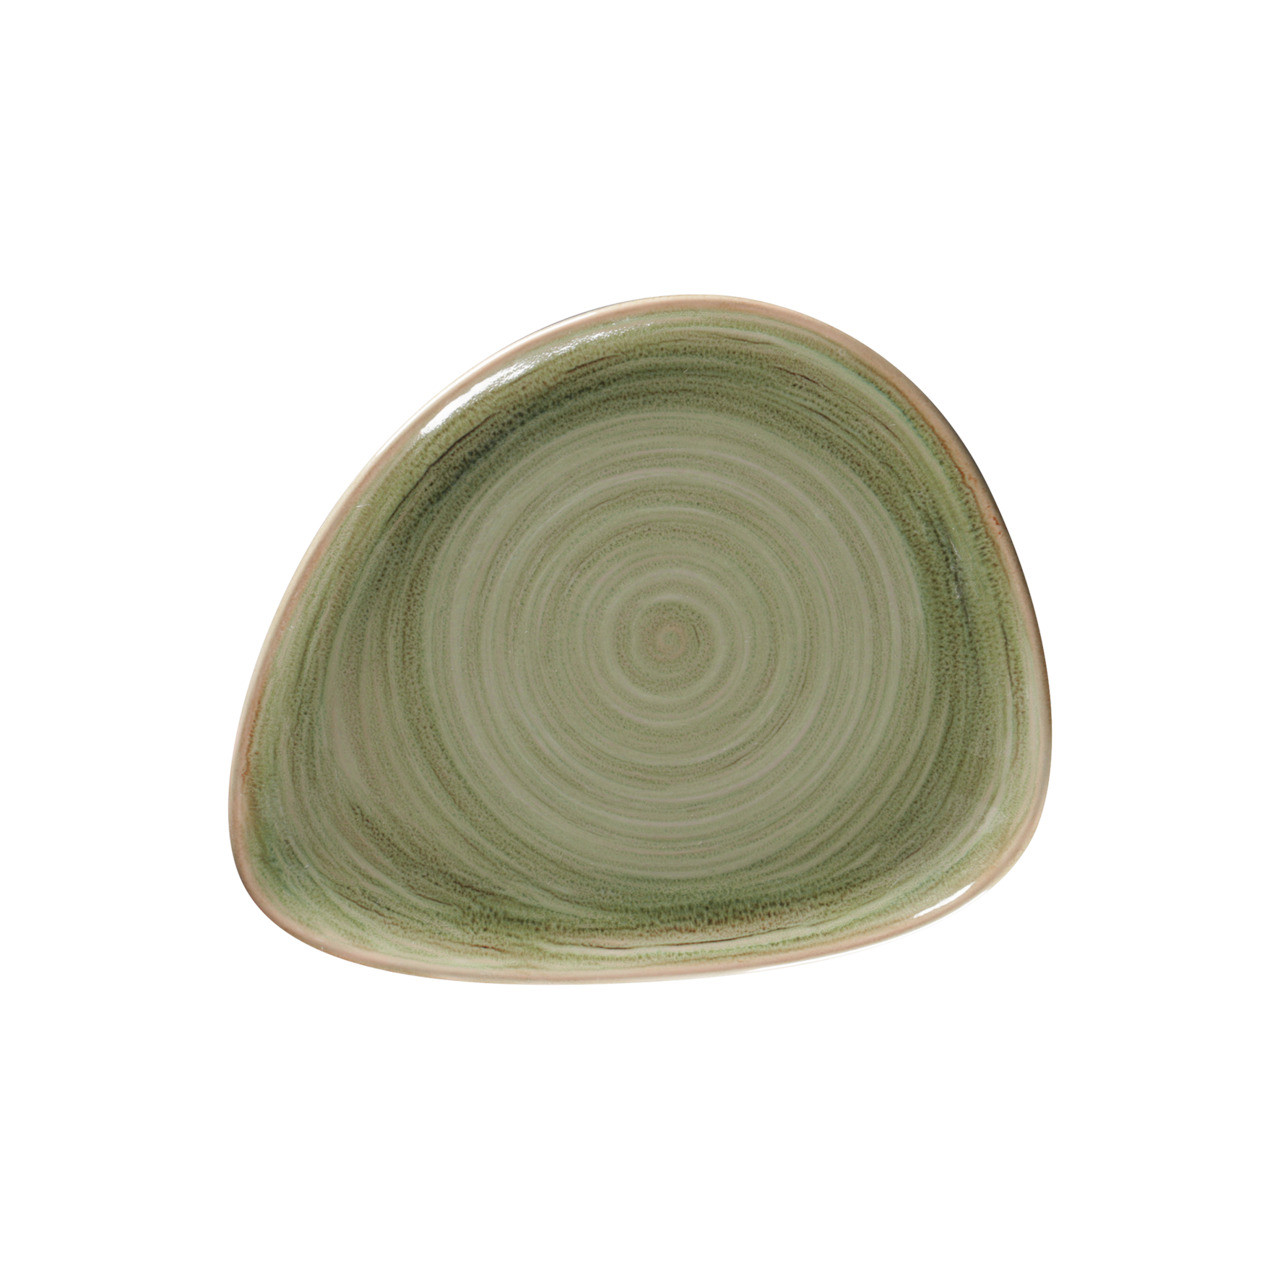 Spot, Teller flach organisch 240 x 194 mm emerald green